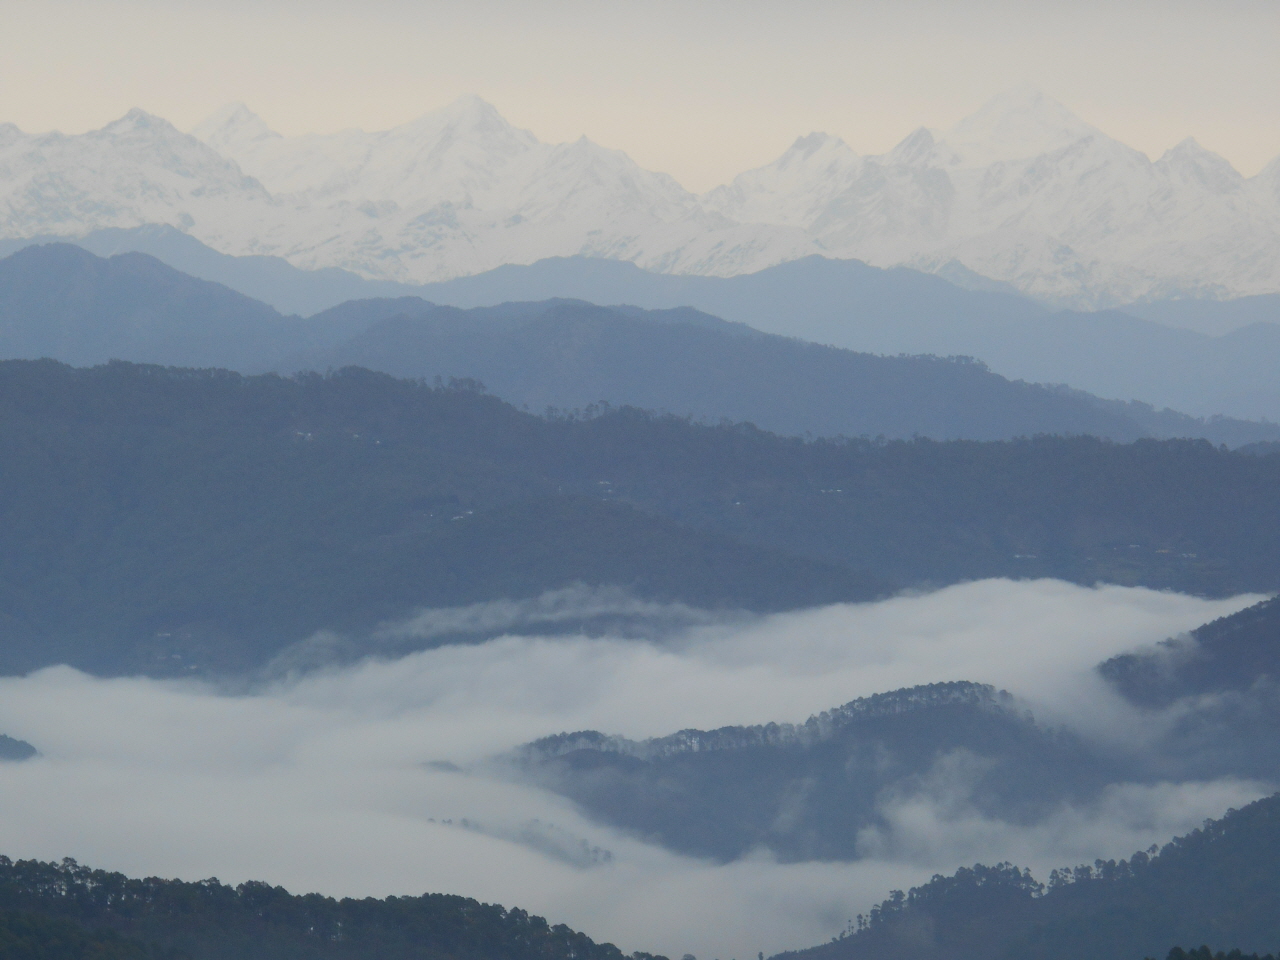 북인도 코사니 앞에 펼쳐진 히말라야 설산. 저 설산 아래 어딘가에 자리하고 있다는 네팔 국경의 산악지대를 트레킹하기 위해 매일 아침 걷고 또 걸었다. 